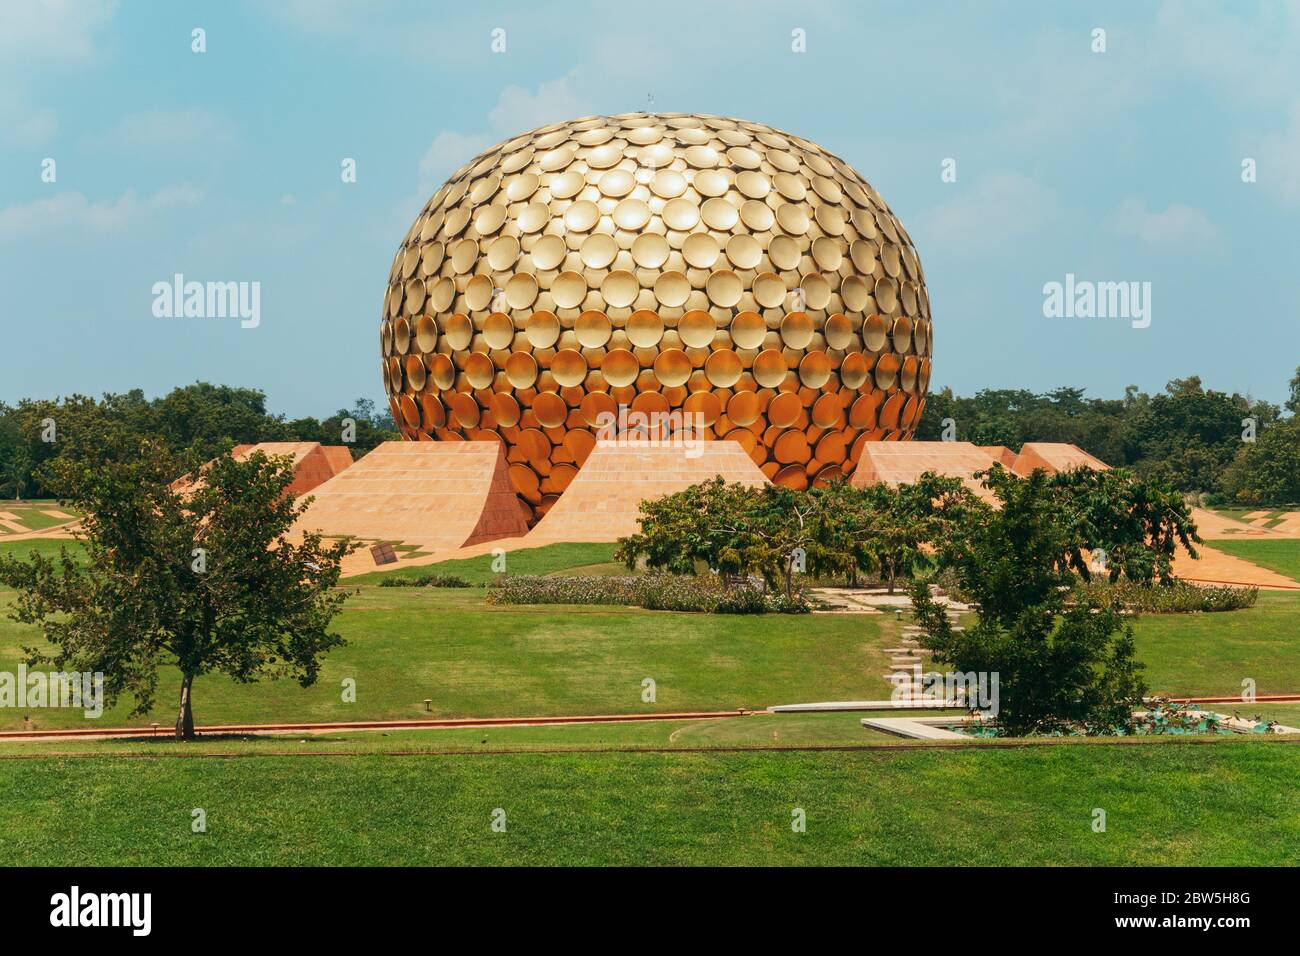 Gepflegter Rasen vor Matrimandir, einer goldenen Kugelstruktur, die für die Meditation in der experimentellen Township Auroville, Indien, gebaut wurde Stockfoto